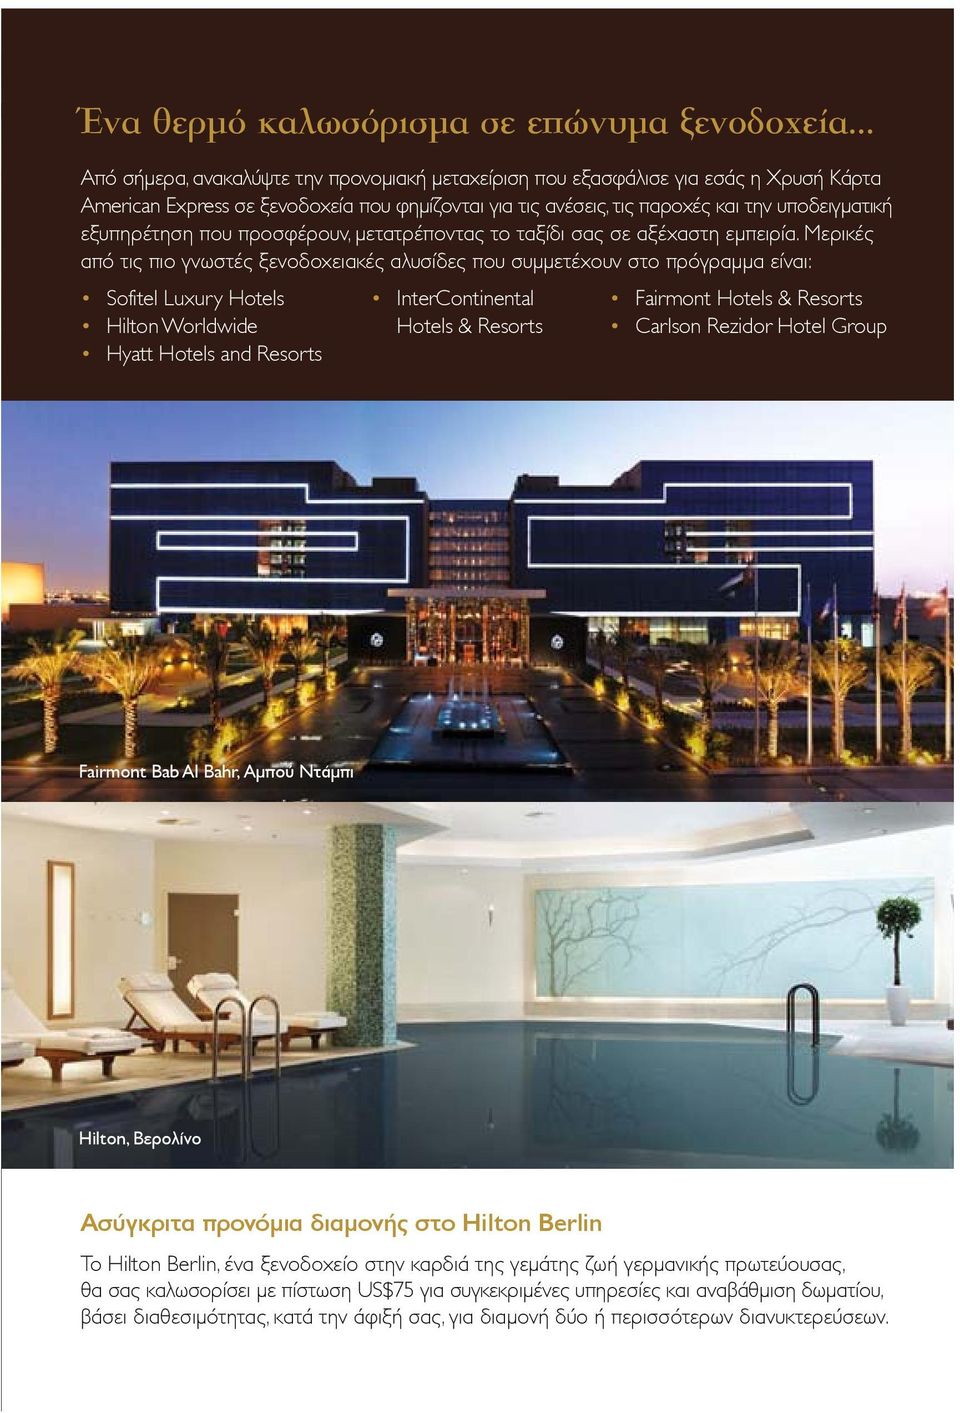 Μερικές από τις πιο γνωστές ξενοδοχειακές αλυσίδες που συµµετέχουν στο πρόγραµµα είναι: Sofitel Luxury Hotels Hilton Worldwide Hyatt Hotels and Resorts InterContinental Hotels & Resorts Fairmont